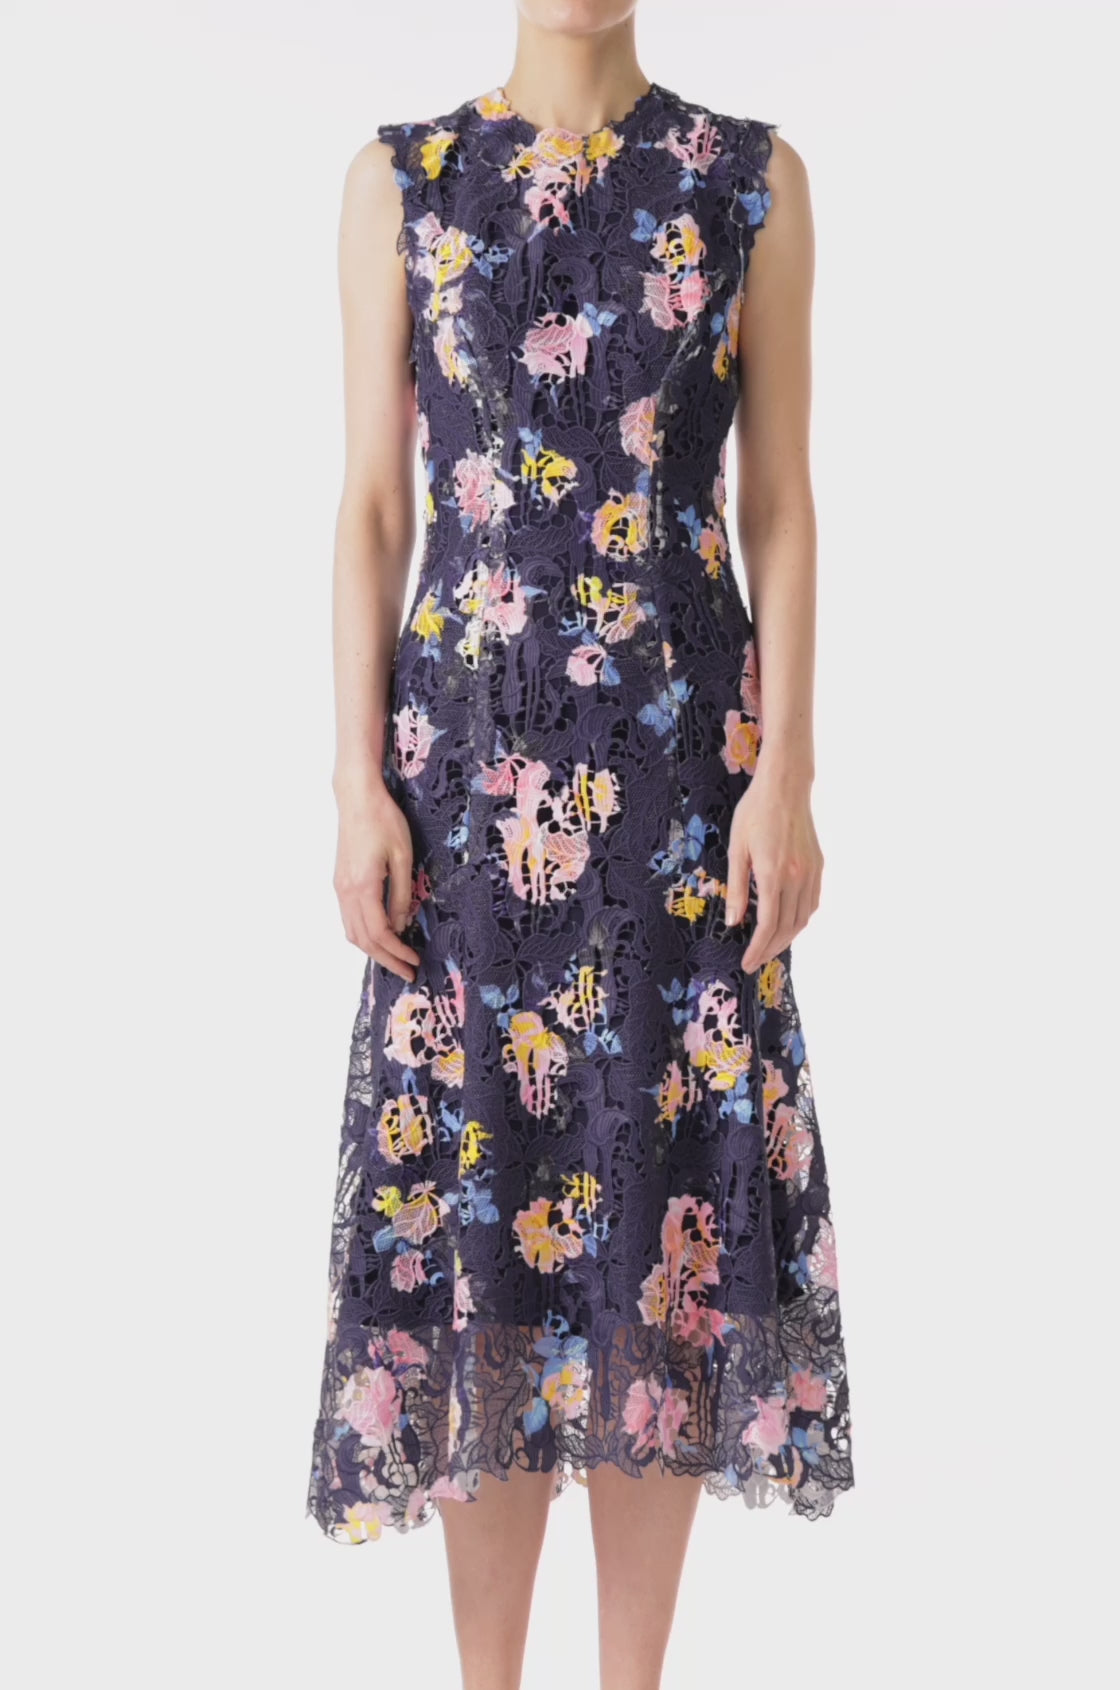 Floral Printed Lace Dress – Monique Lhuillier